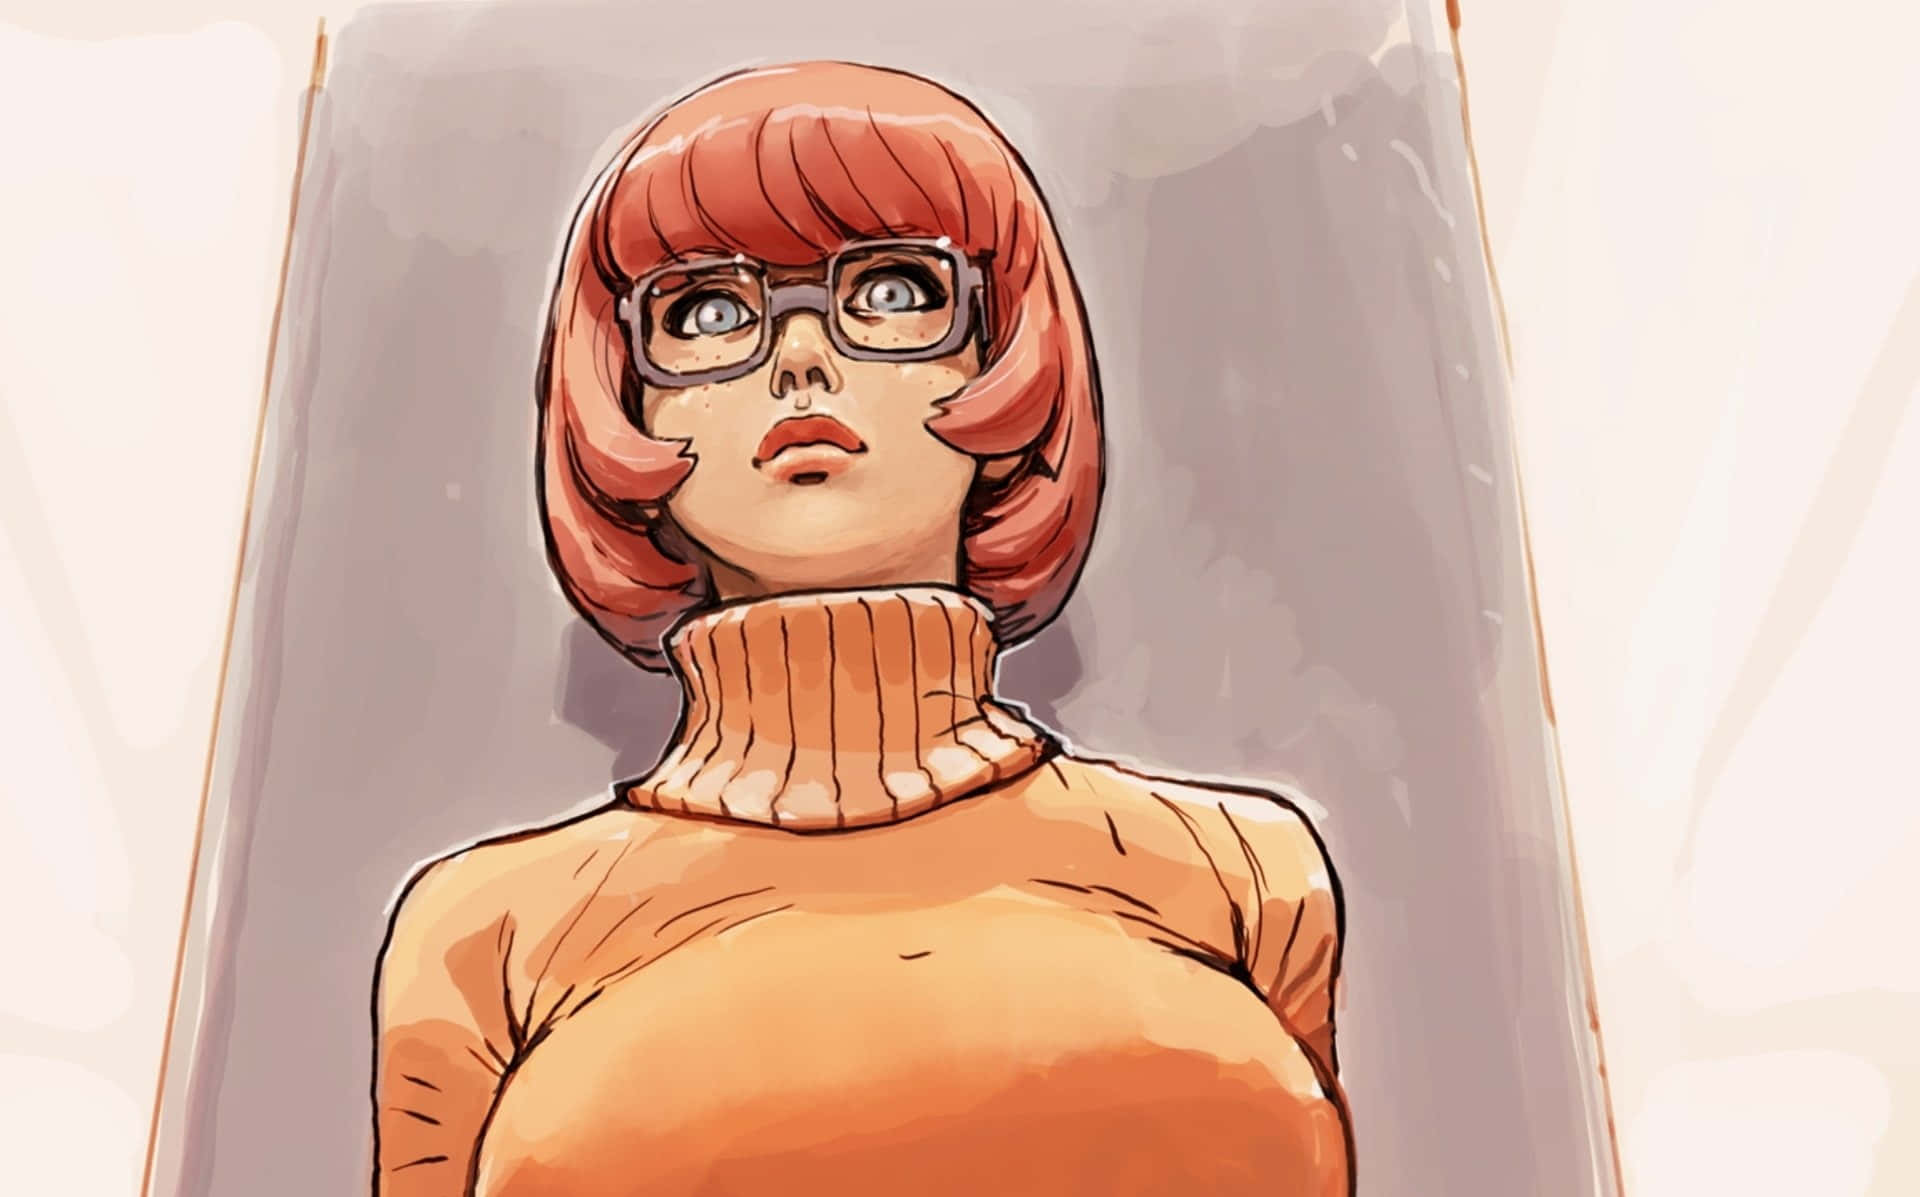 Einezeichentrickfigur Einer Frau Mit Brille Und Orangefarbenem Haar.